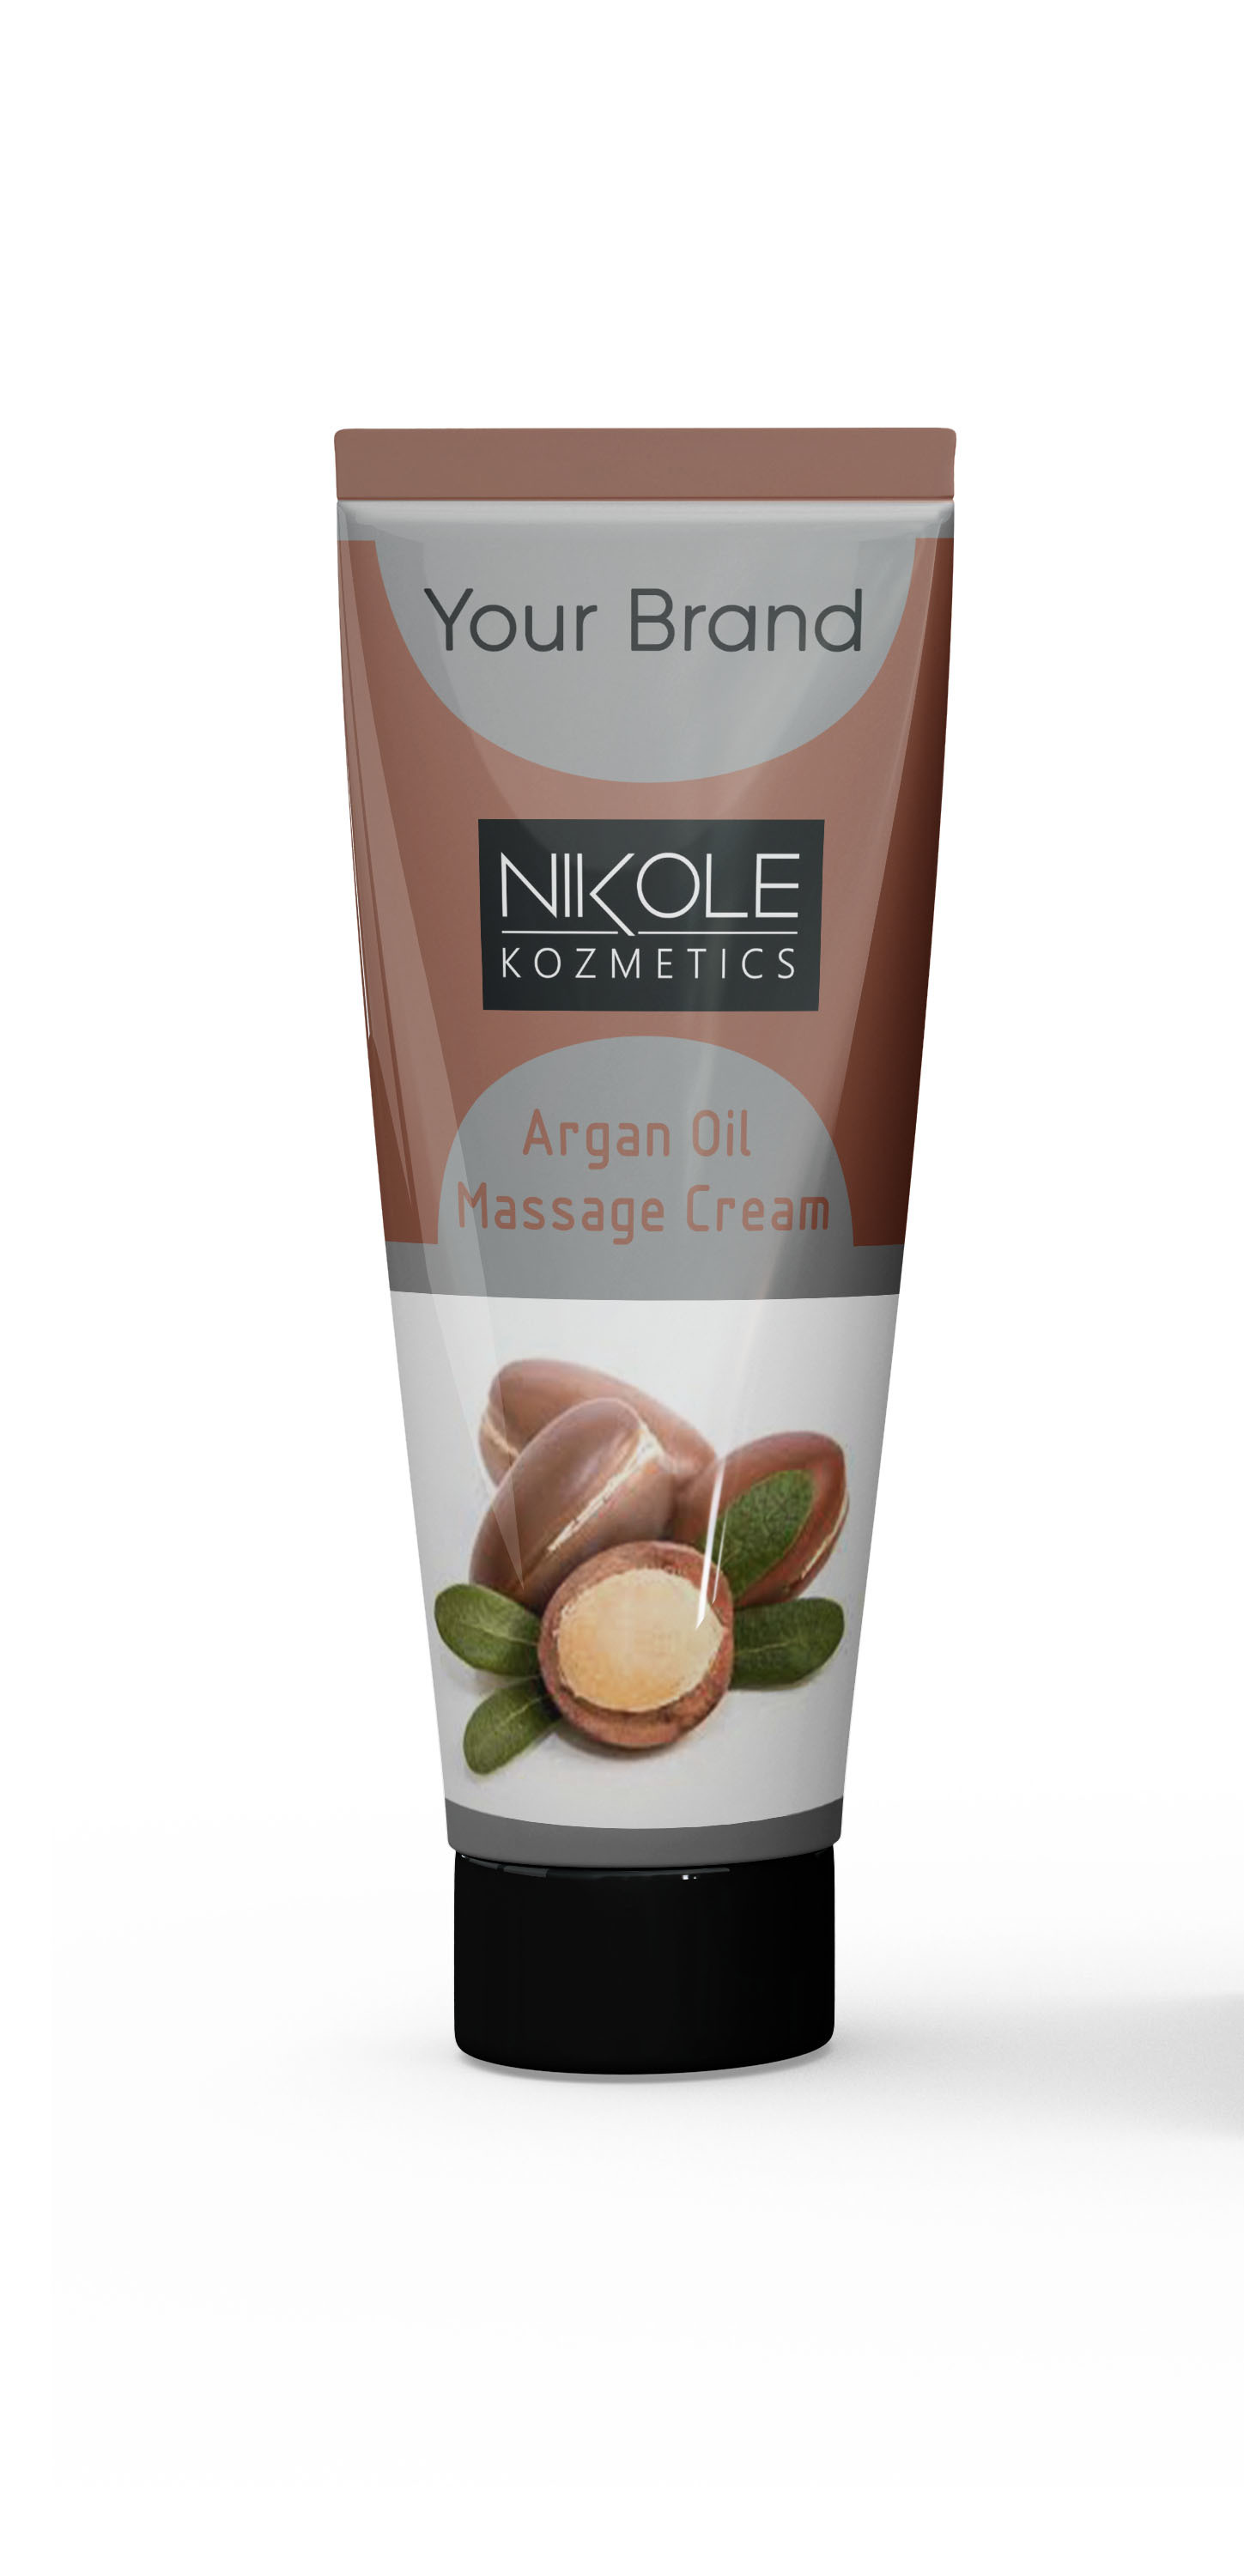 Argan Oil Cream